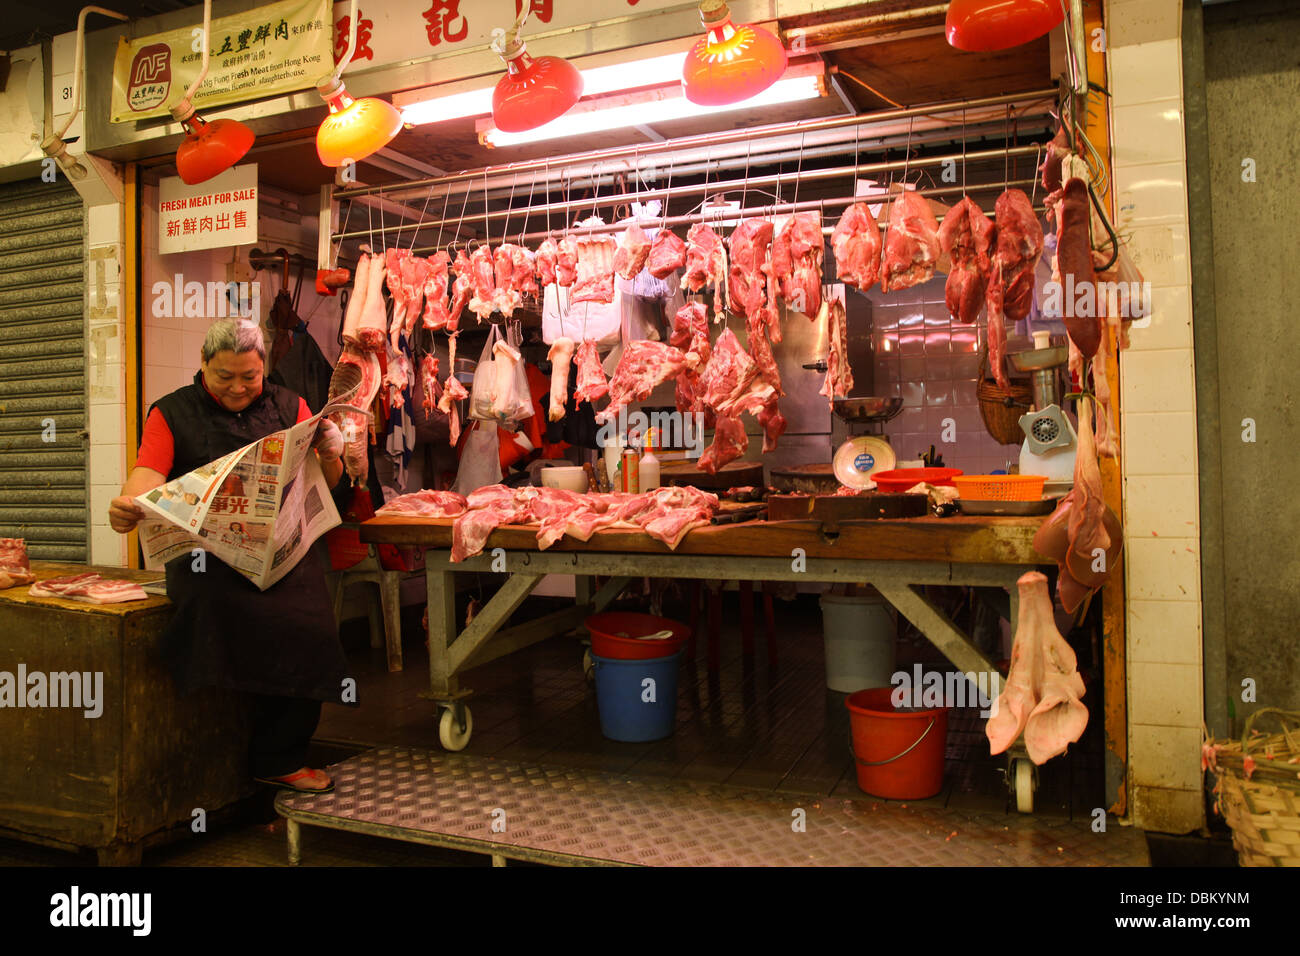 Los carniceros del mercado El mercado chino de calado Foto de stock